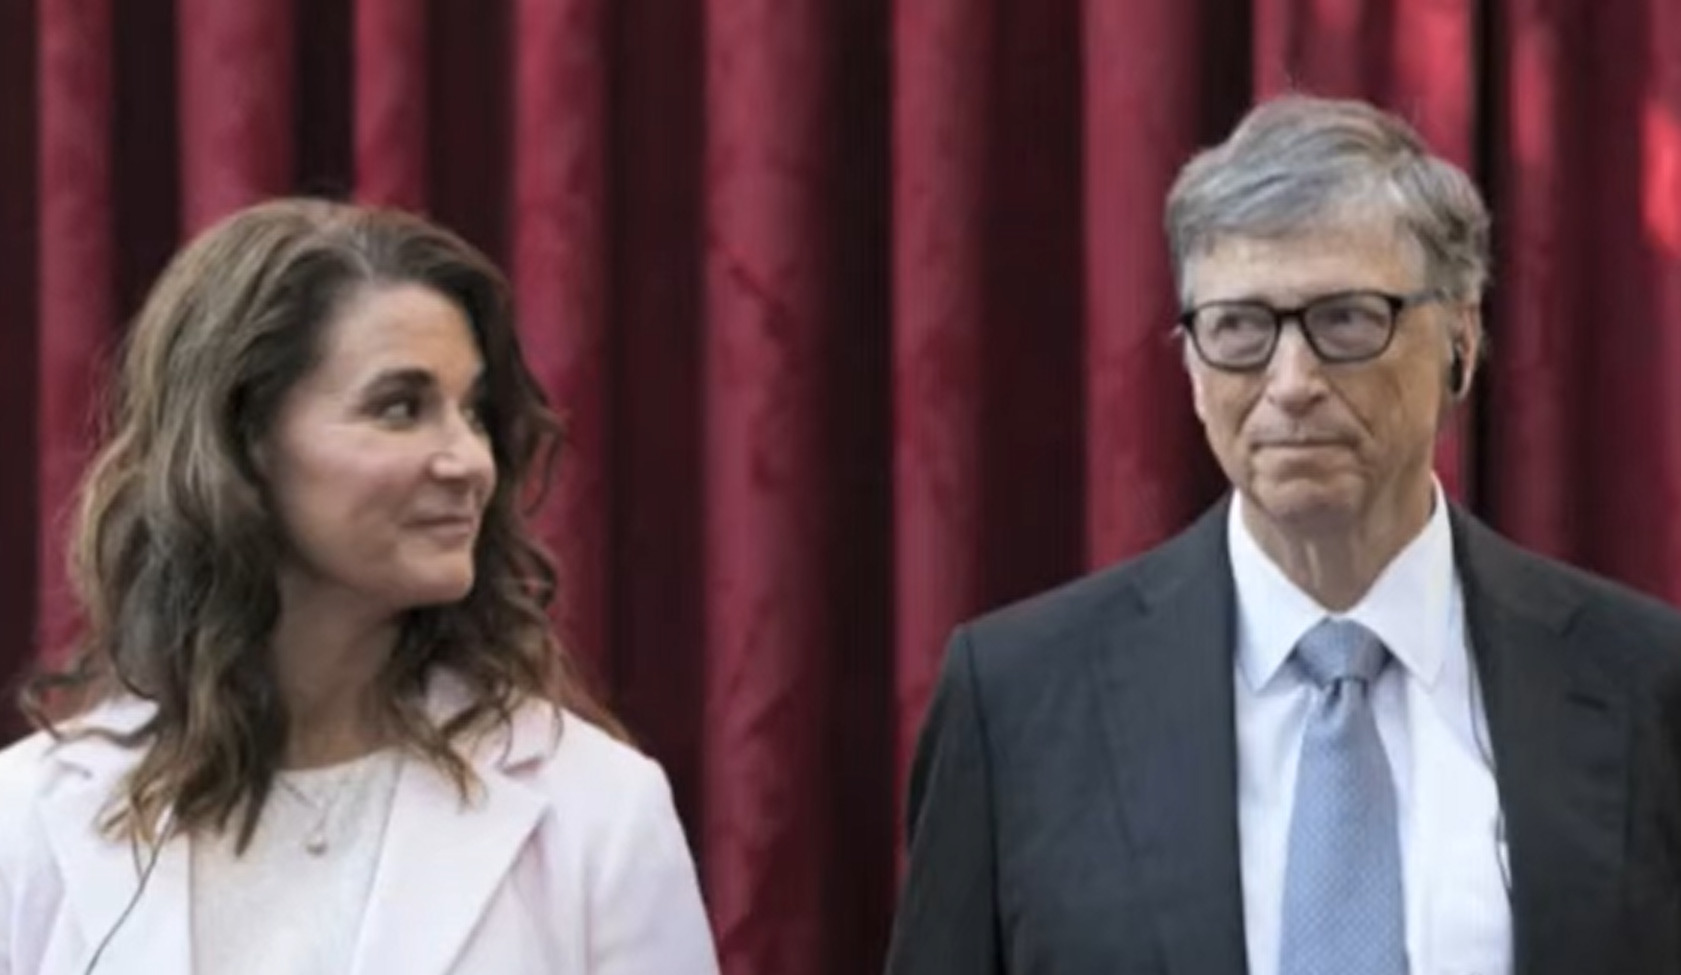 La prima intervista di Melinda Gates dopo il divorzio